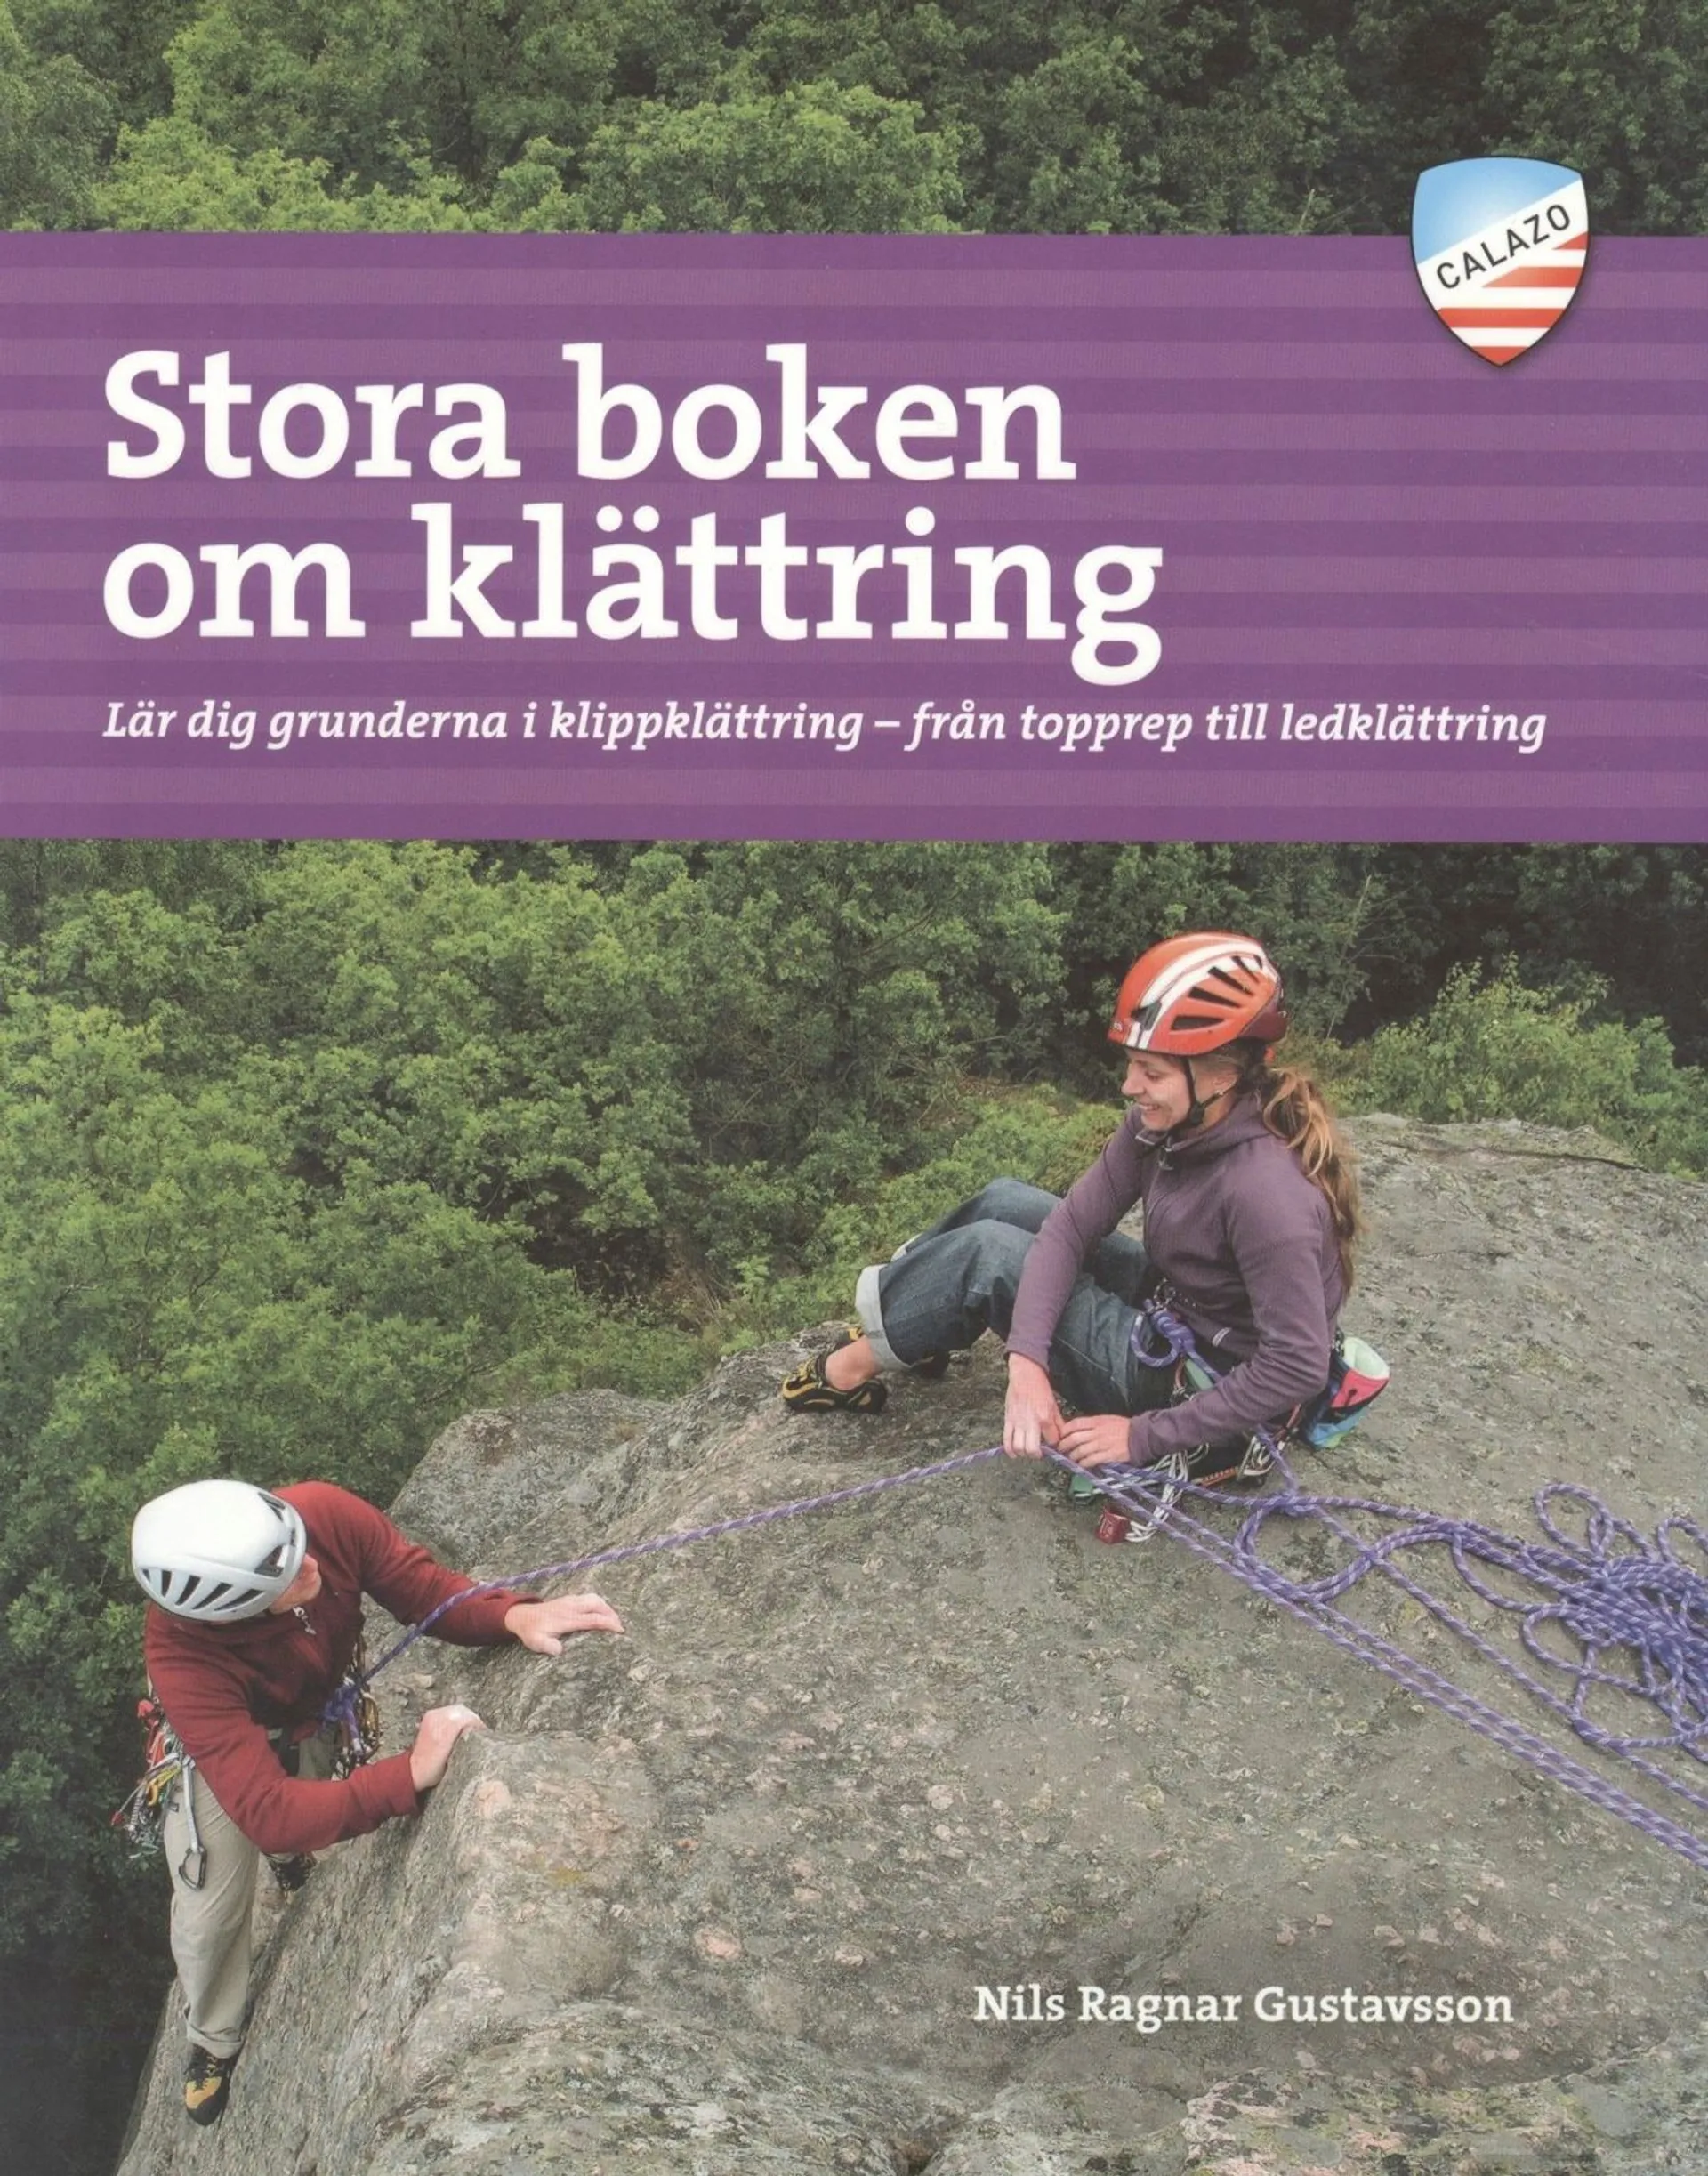 Gustavsson, Stora boken om klättring - Lär dig grunderna i klippklättring - från topprep till ledklättring